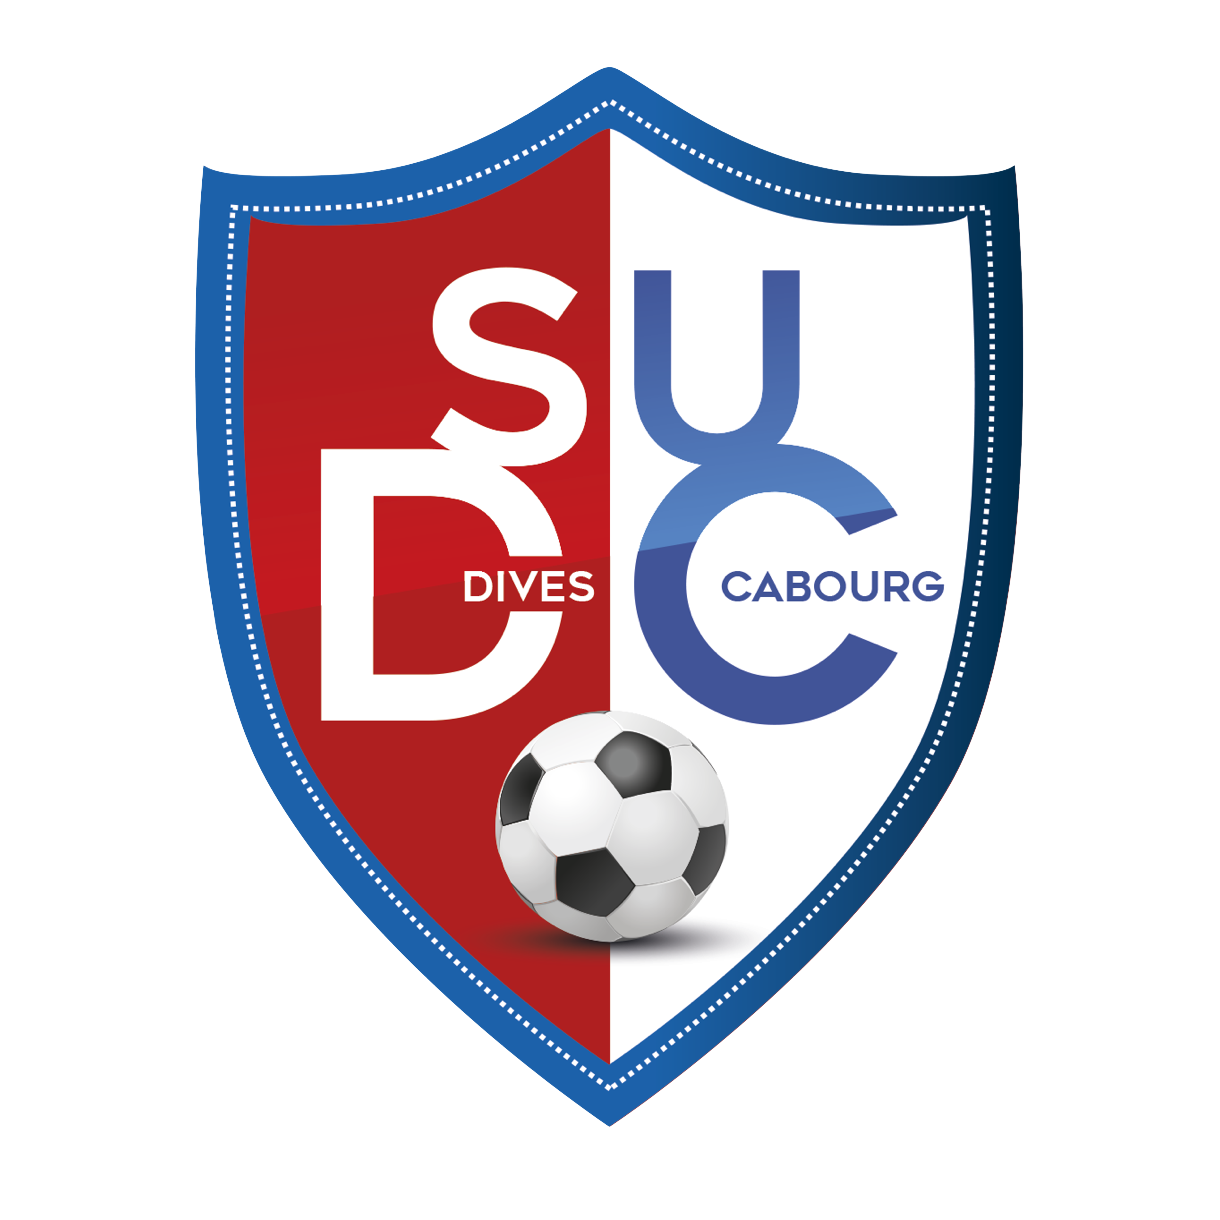 Wappen SU Dives-Carbourg